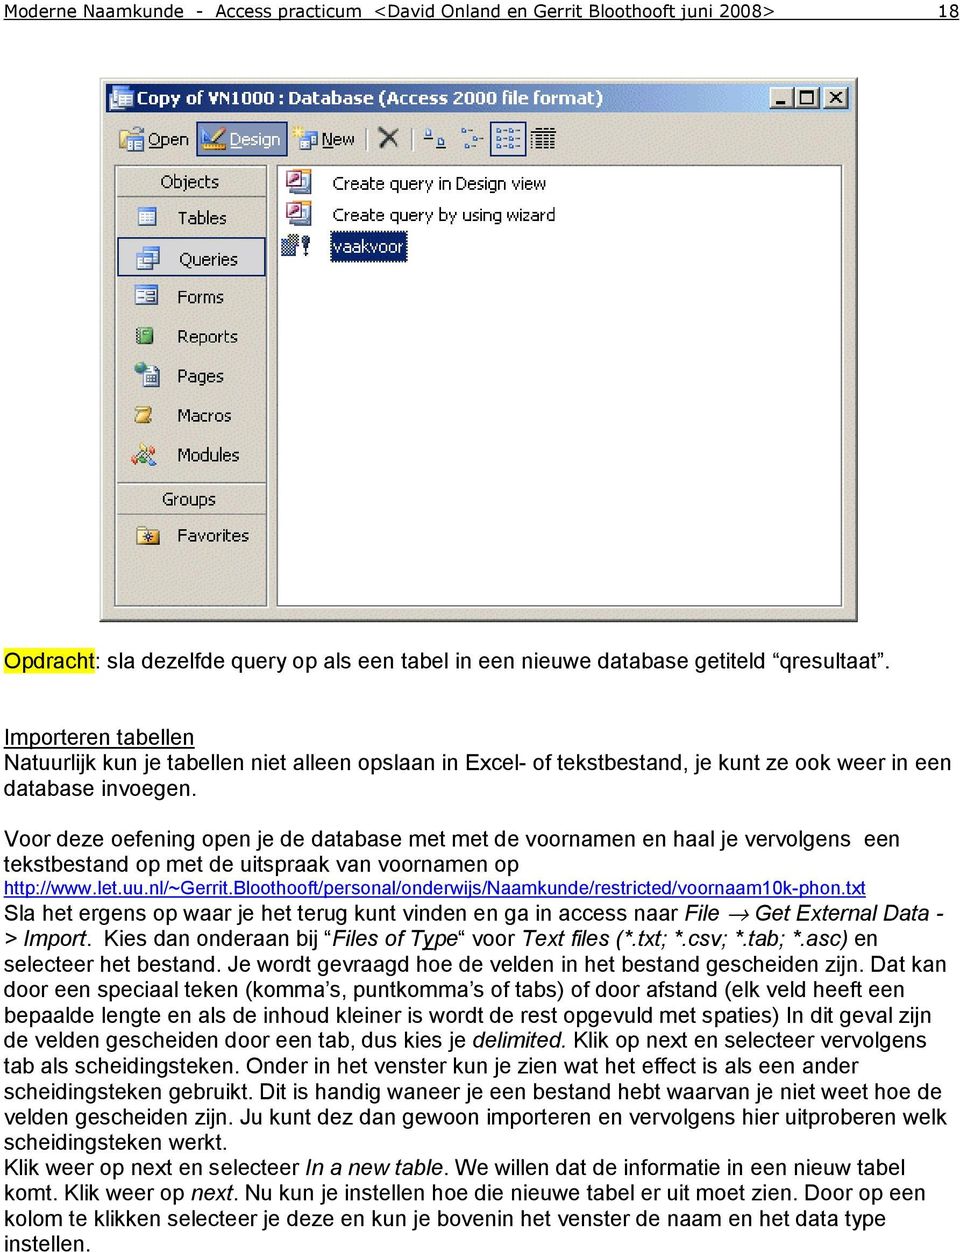 Voor deze oefening open je de database met met de voornamen en haal je vervolgens een tekstbestand op met de uitspraak van voornamen op http://www.let.uu.nl/~gerrit.